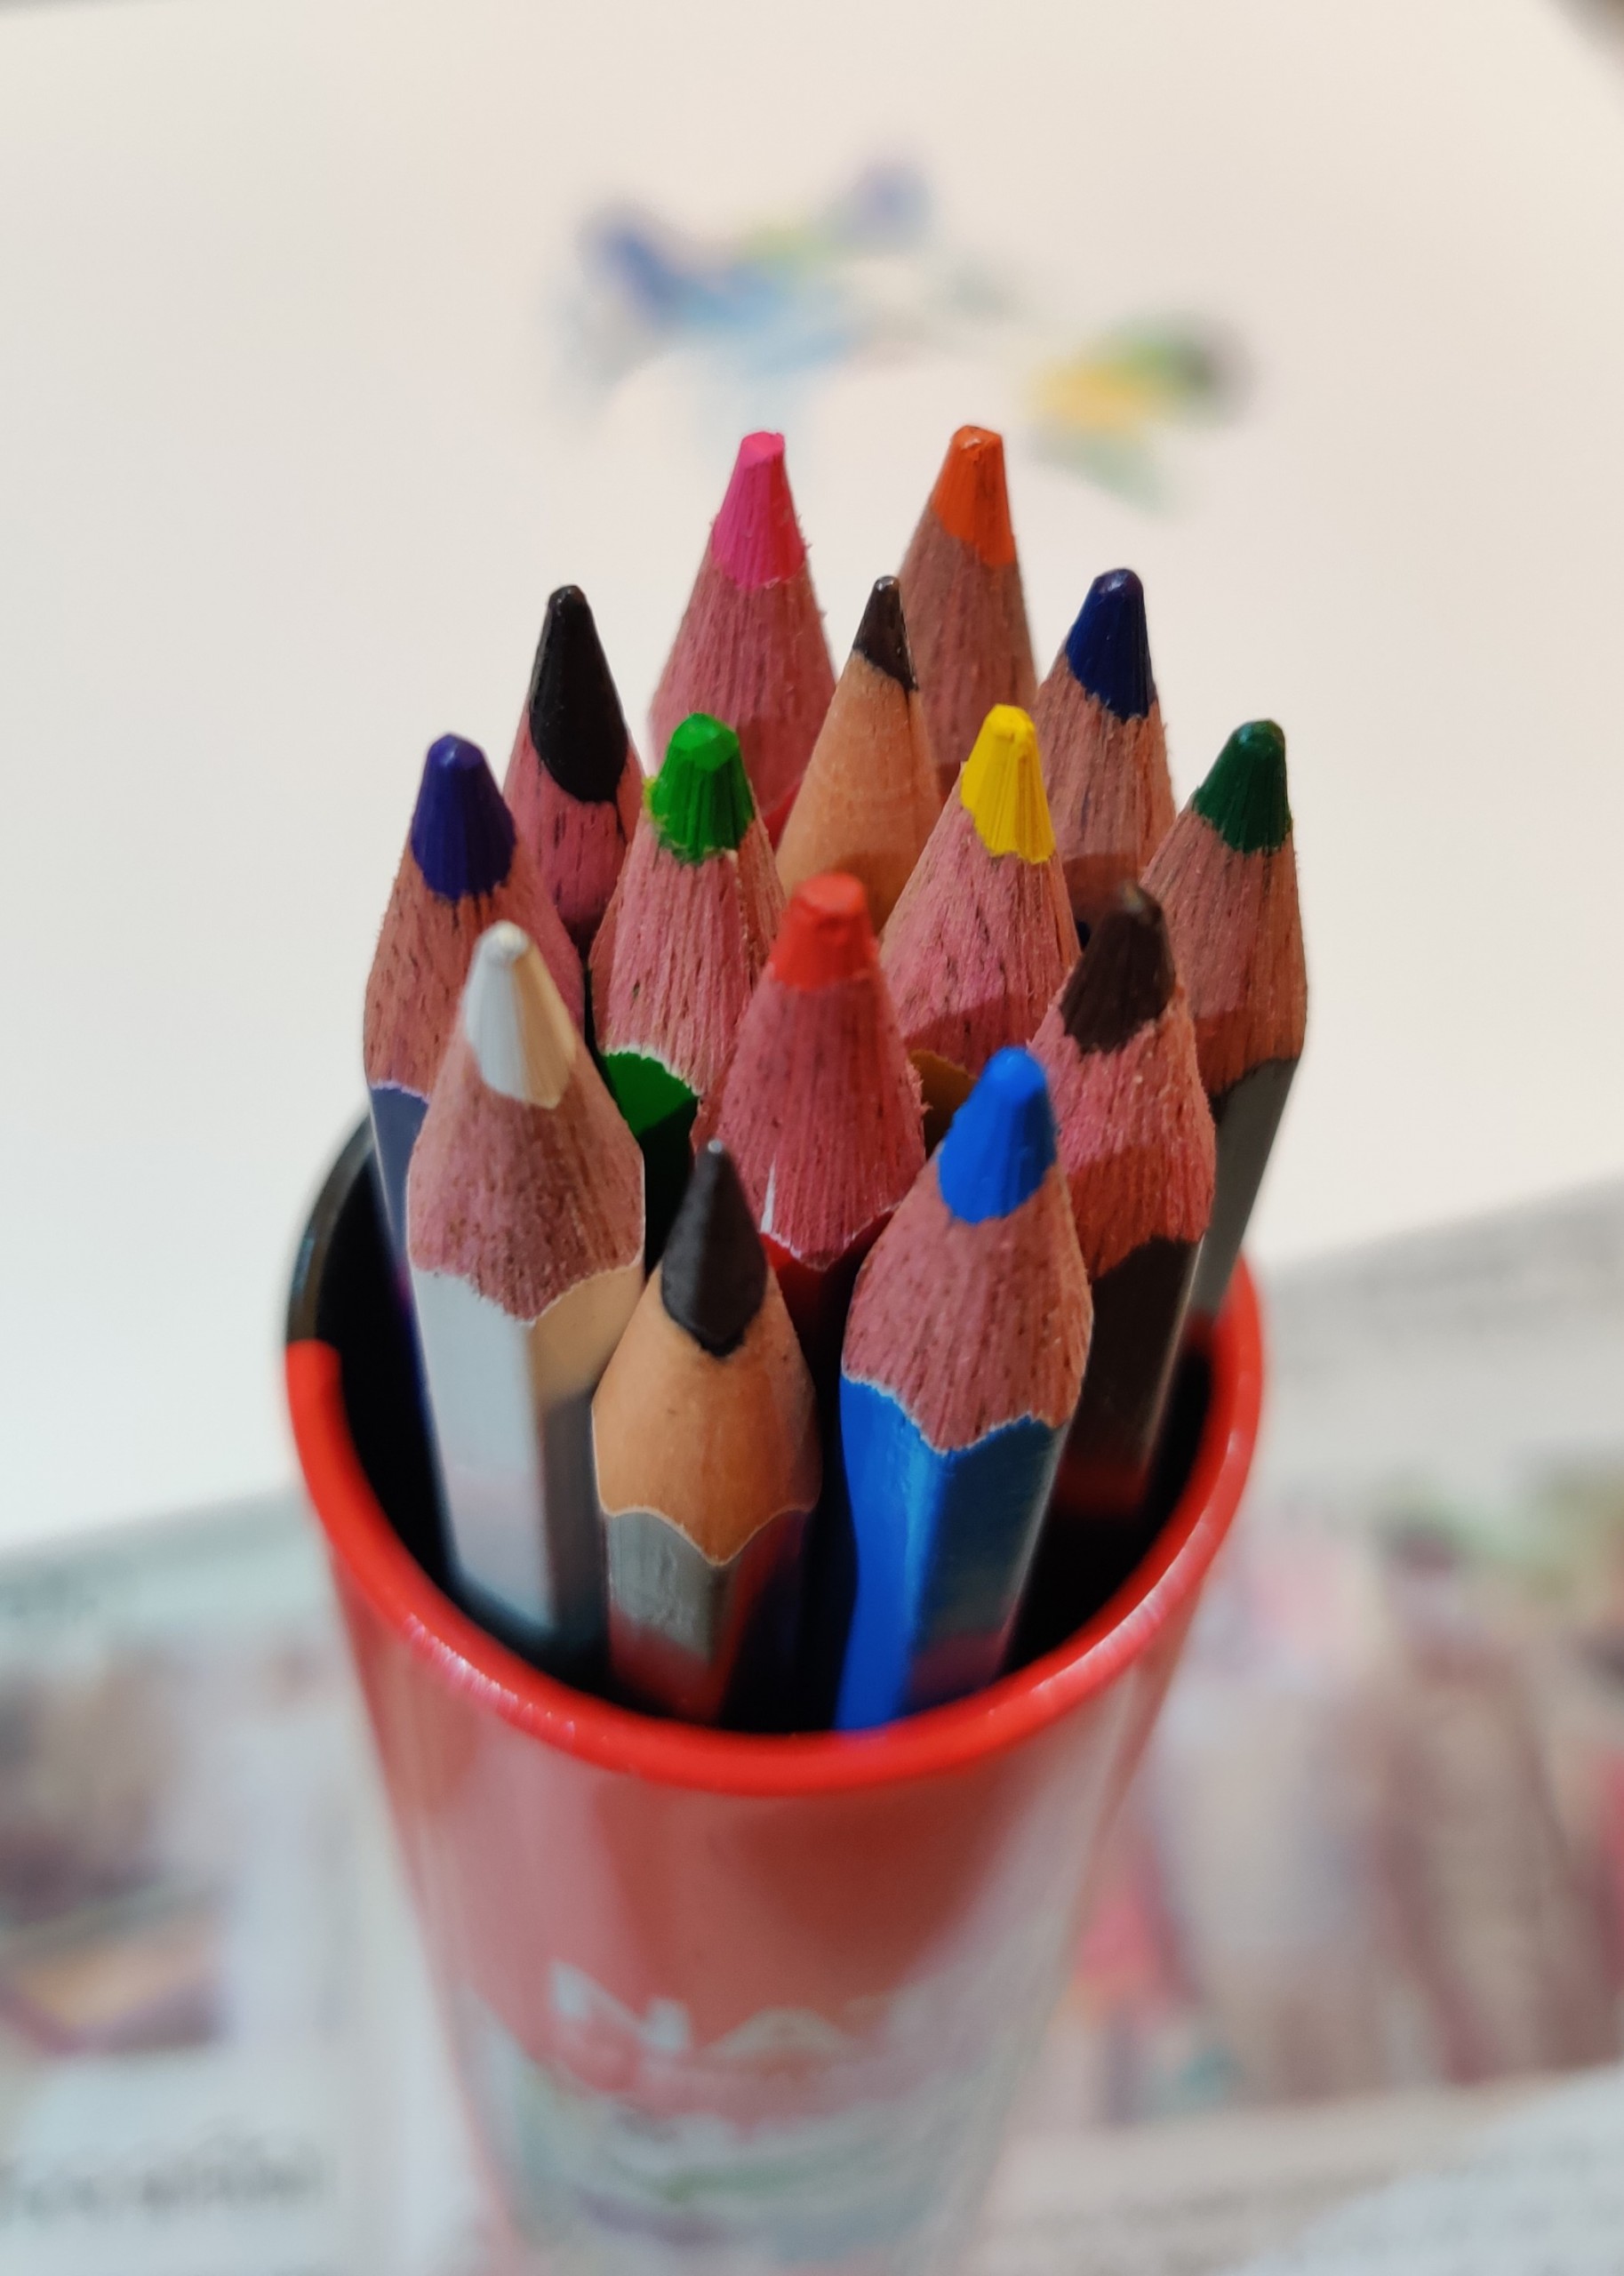 pencil colors